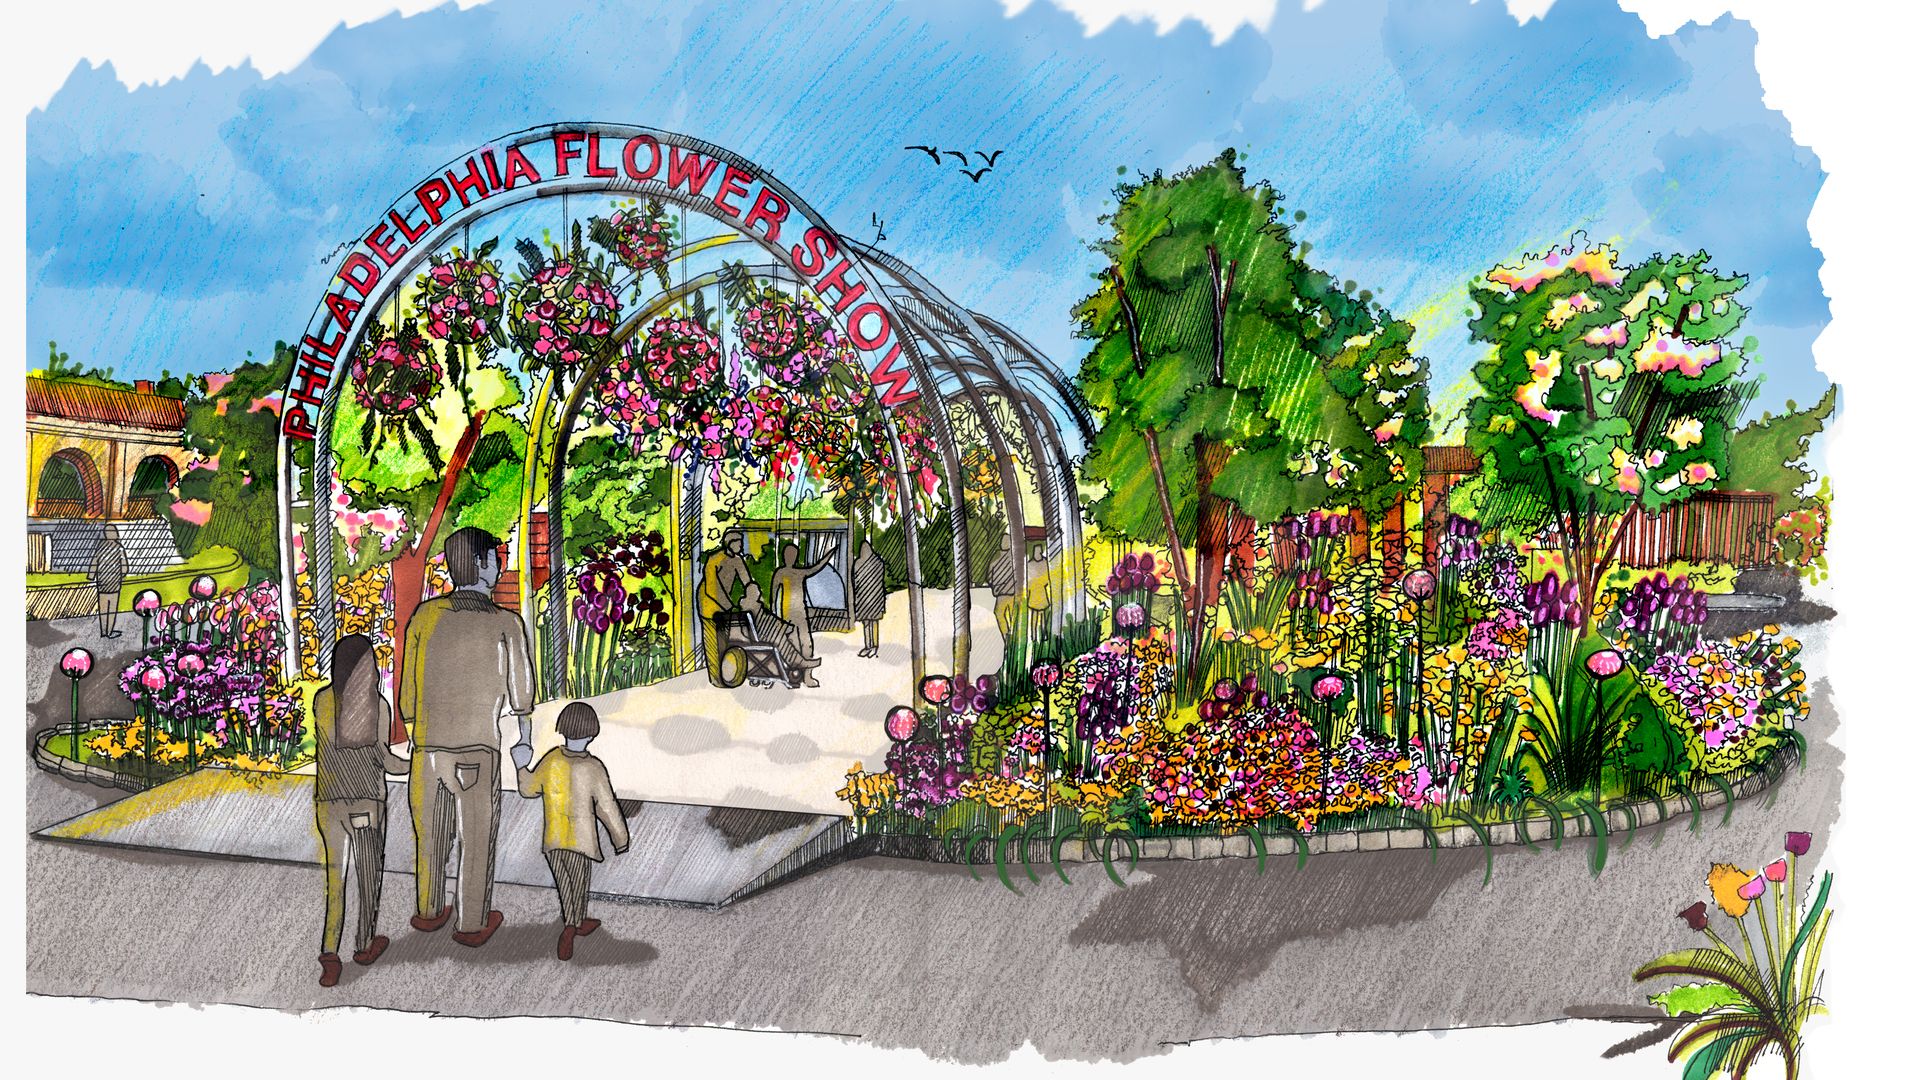 A rendering of the Entry Garden for the 2022 Philadelphia Flower Show.  